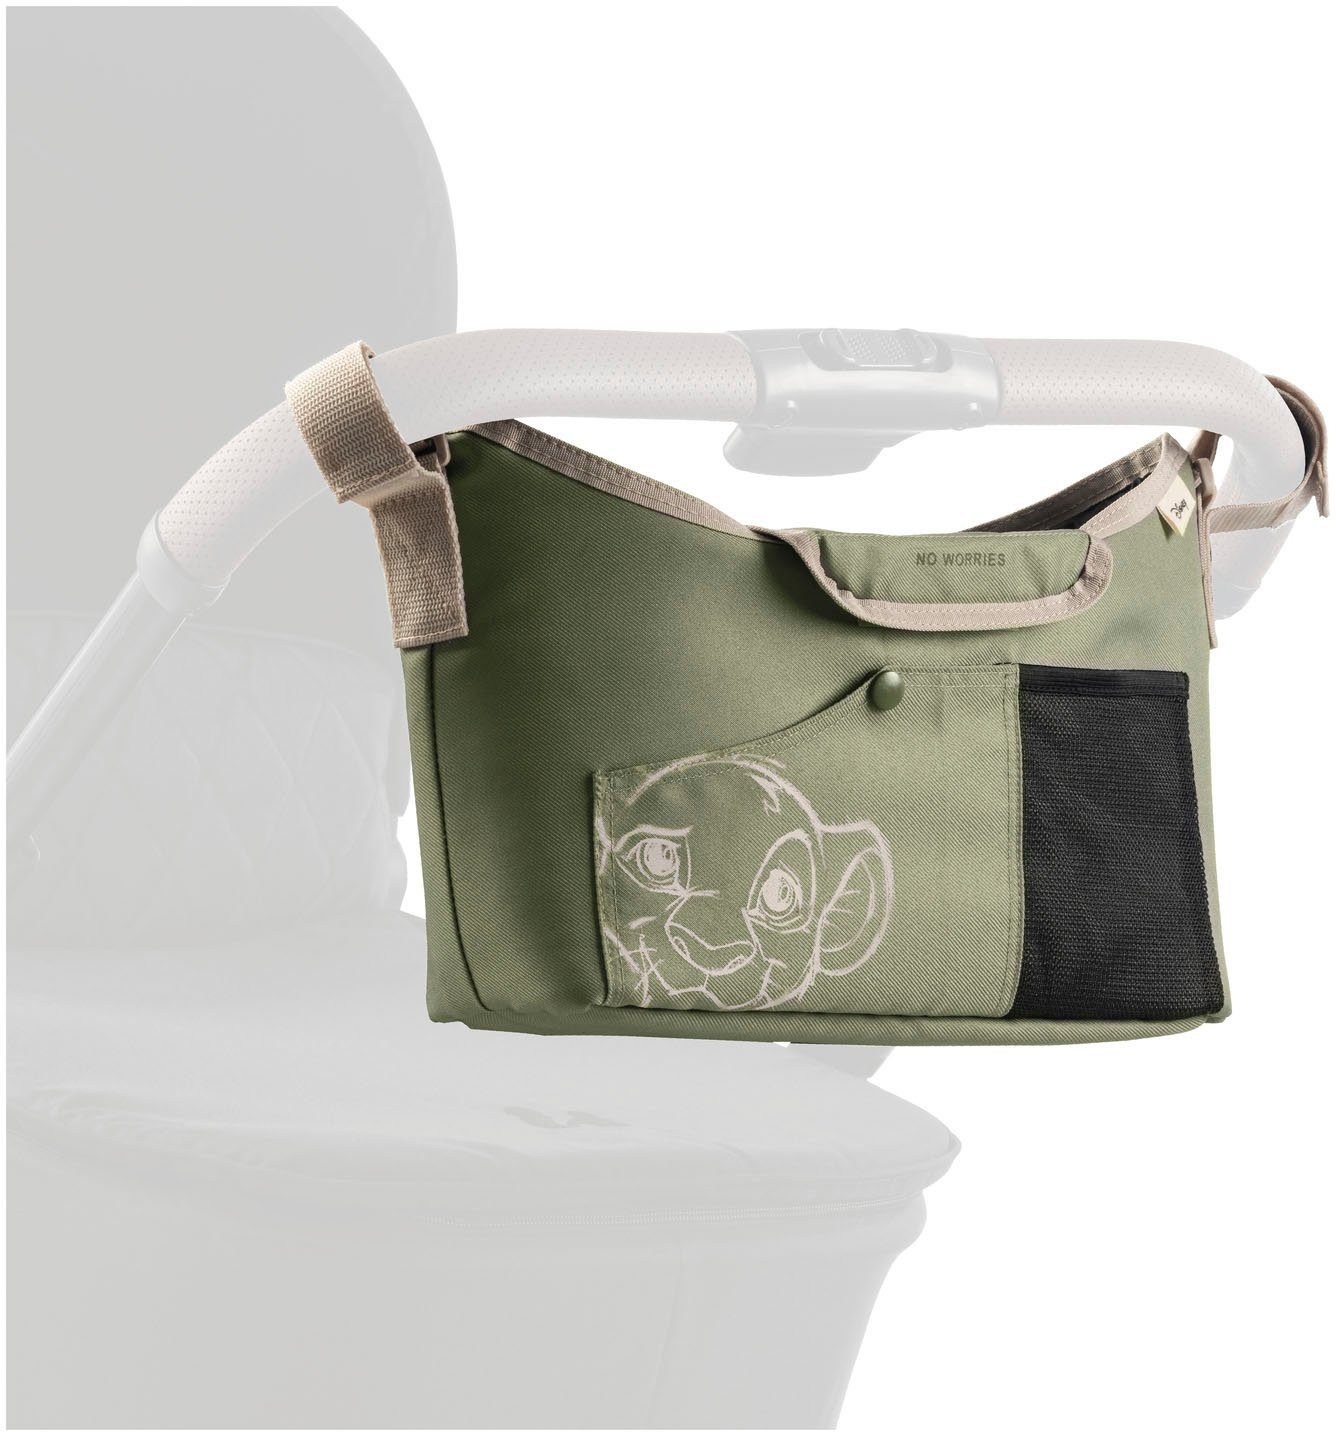 Hauck Pushchair Bag, Kinderwagen-Tasche Simba Olive